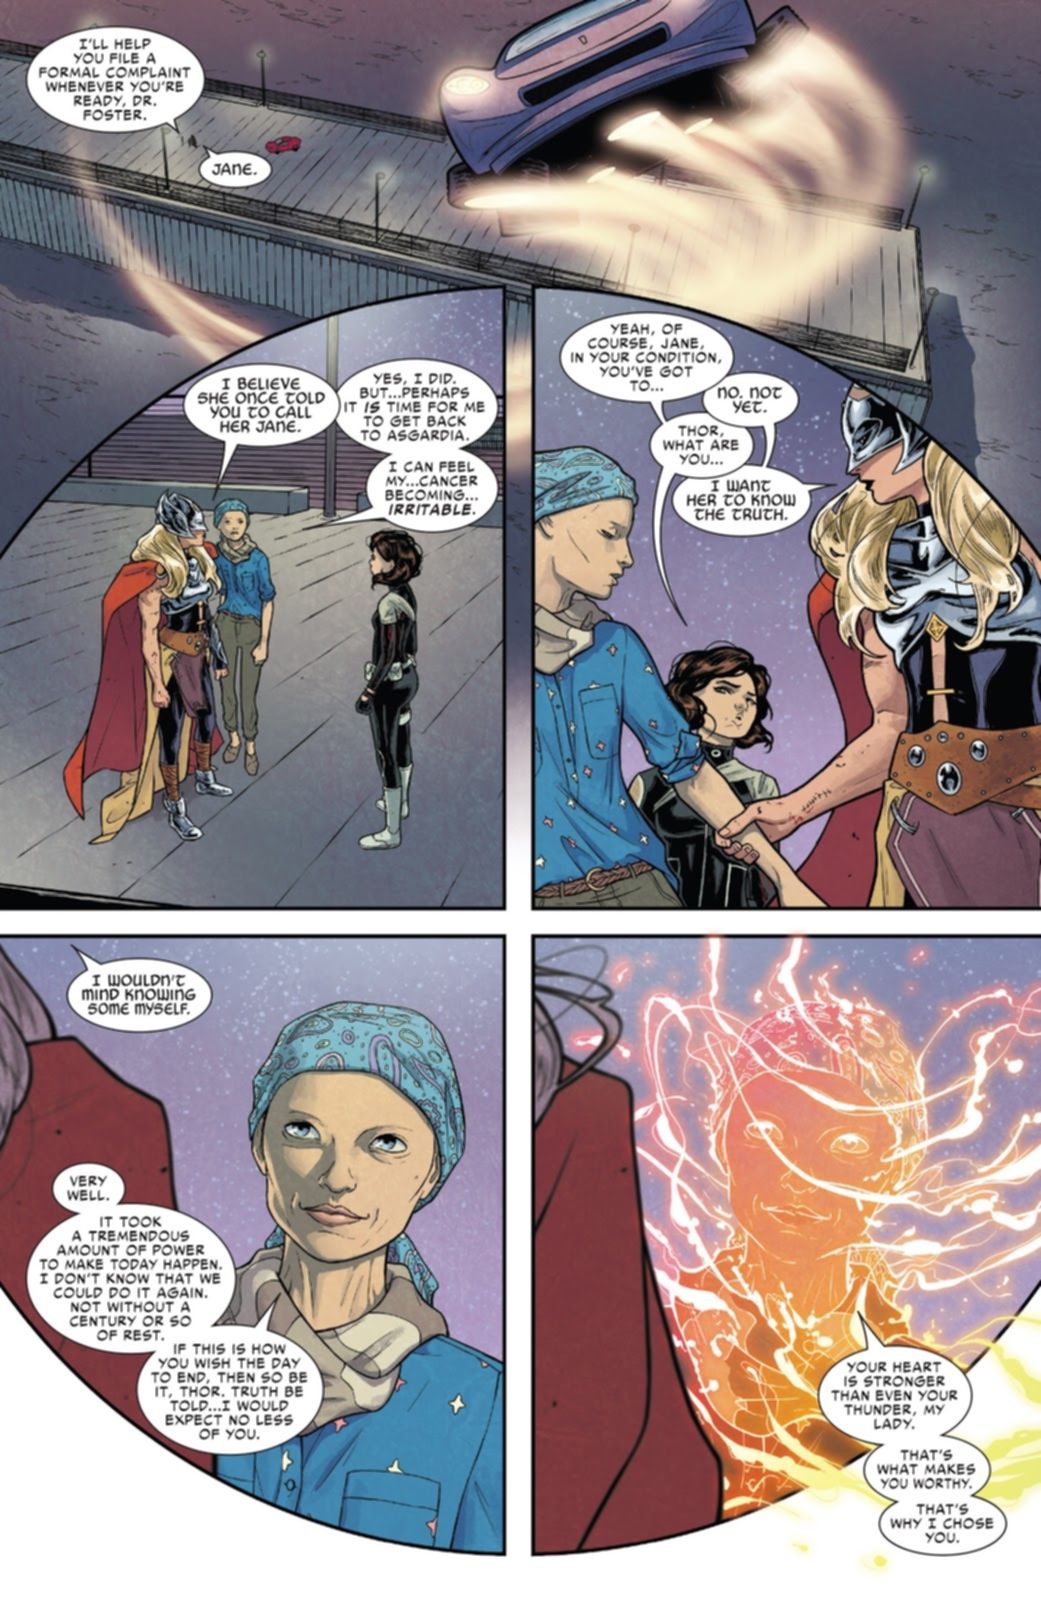 Jane Foster Thor Mjolnir Marvel Comics